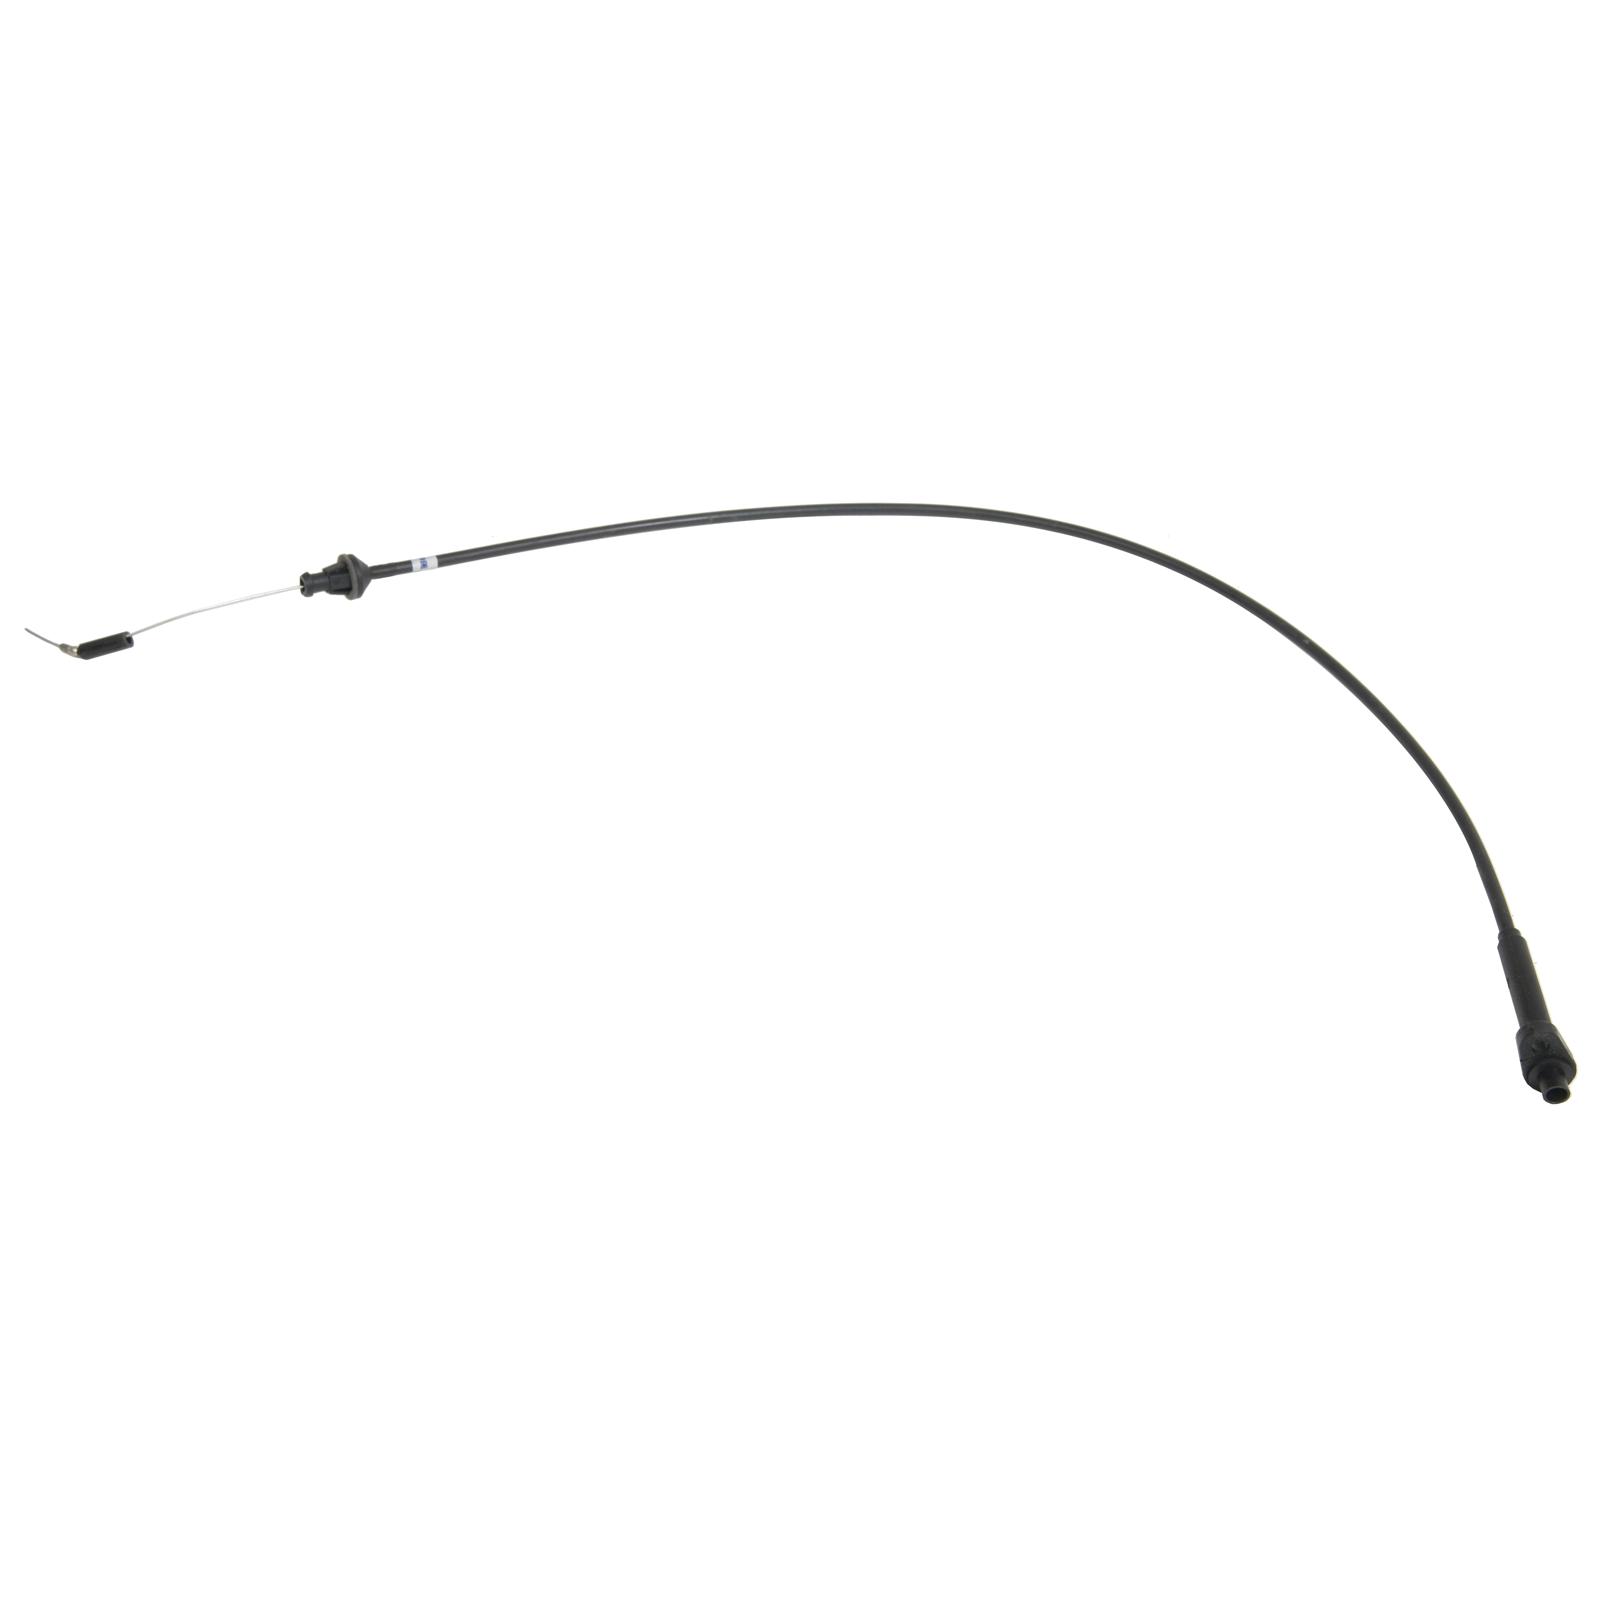 ATP Automotive Y-104 Detent Cable 